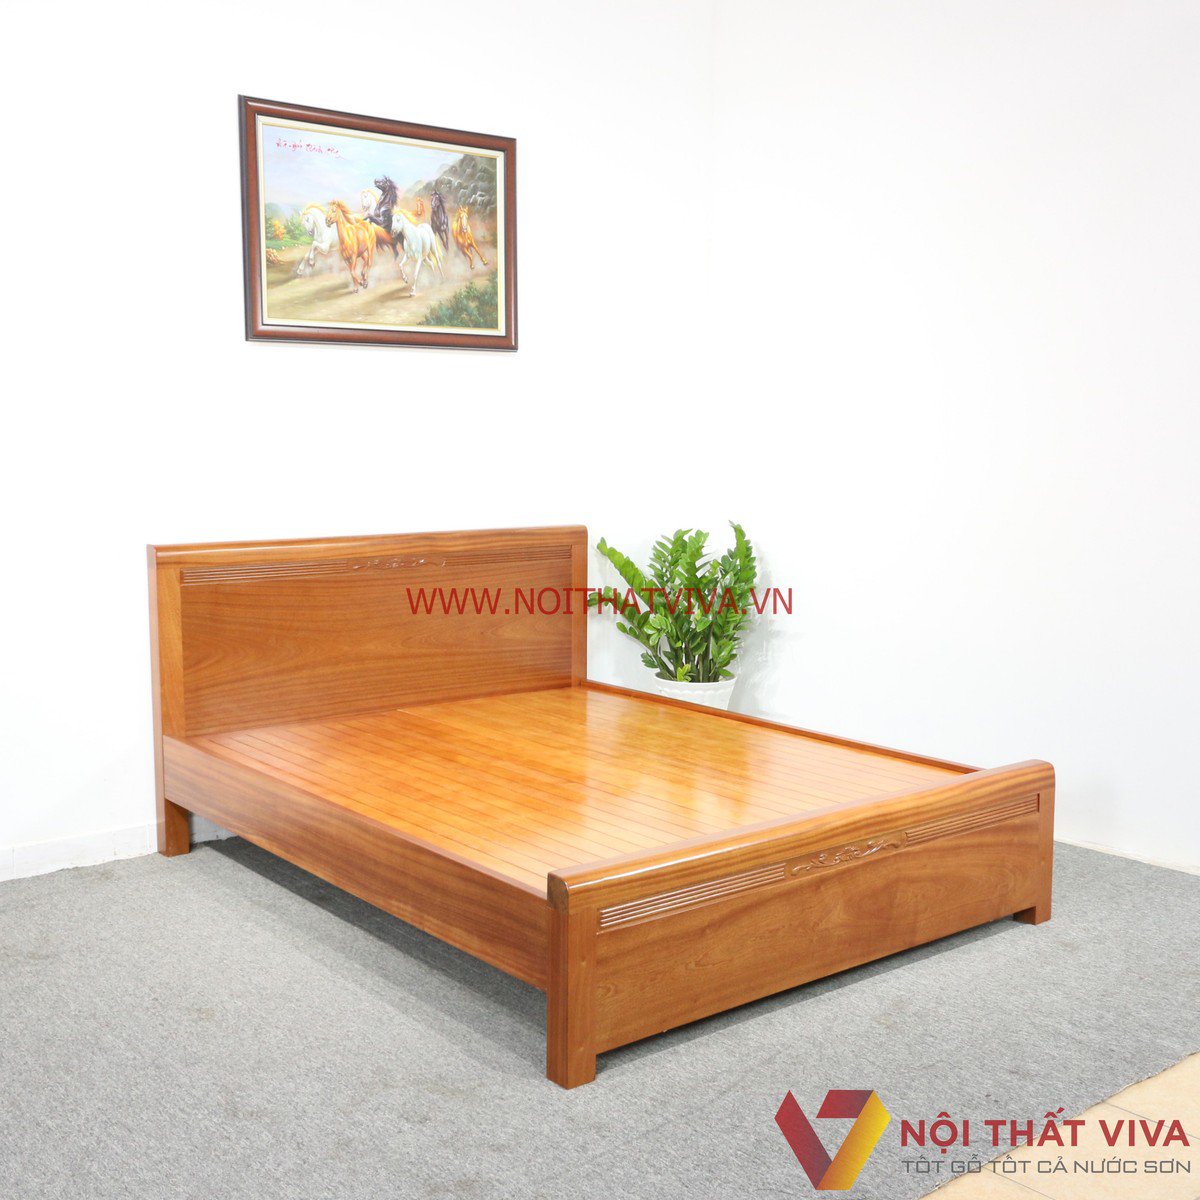 [BST] Những mẫu giường ngủ gỗ đẹp hiện đại “siêu phẩm” – giá chỉ từ 4 triệu đồng